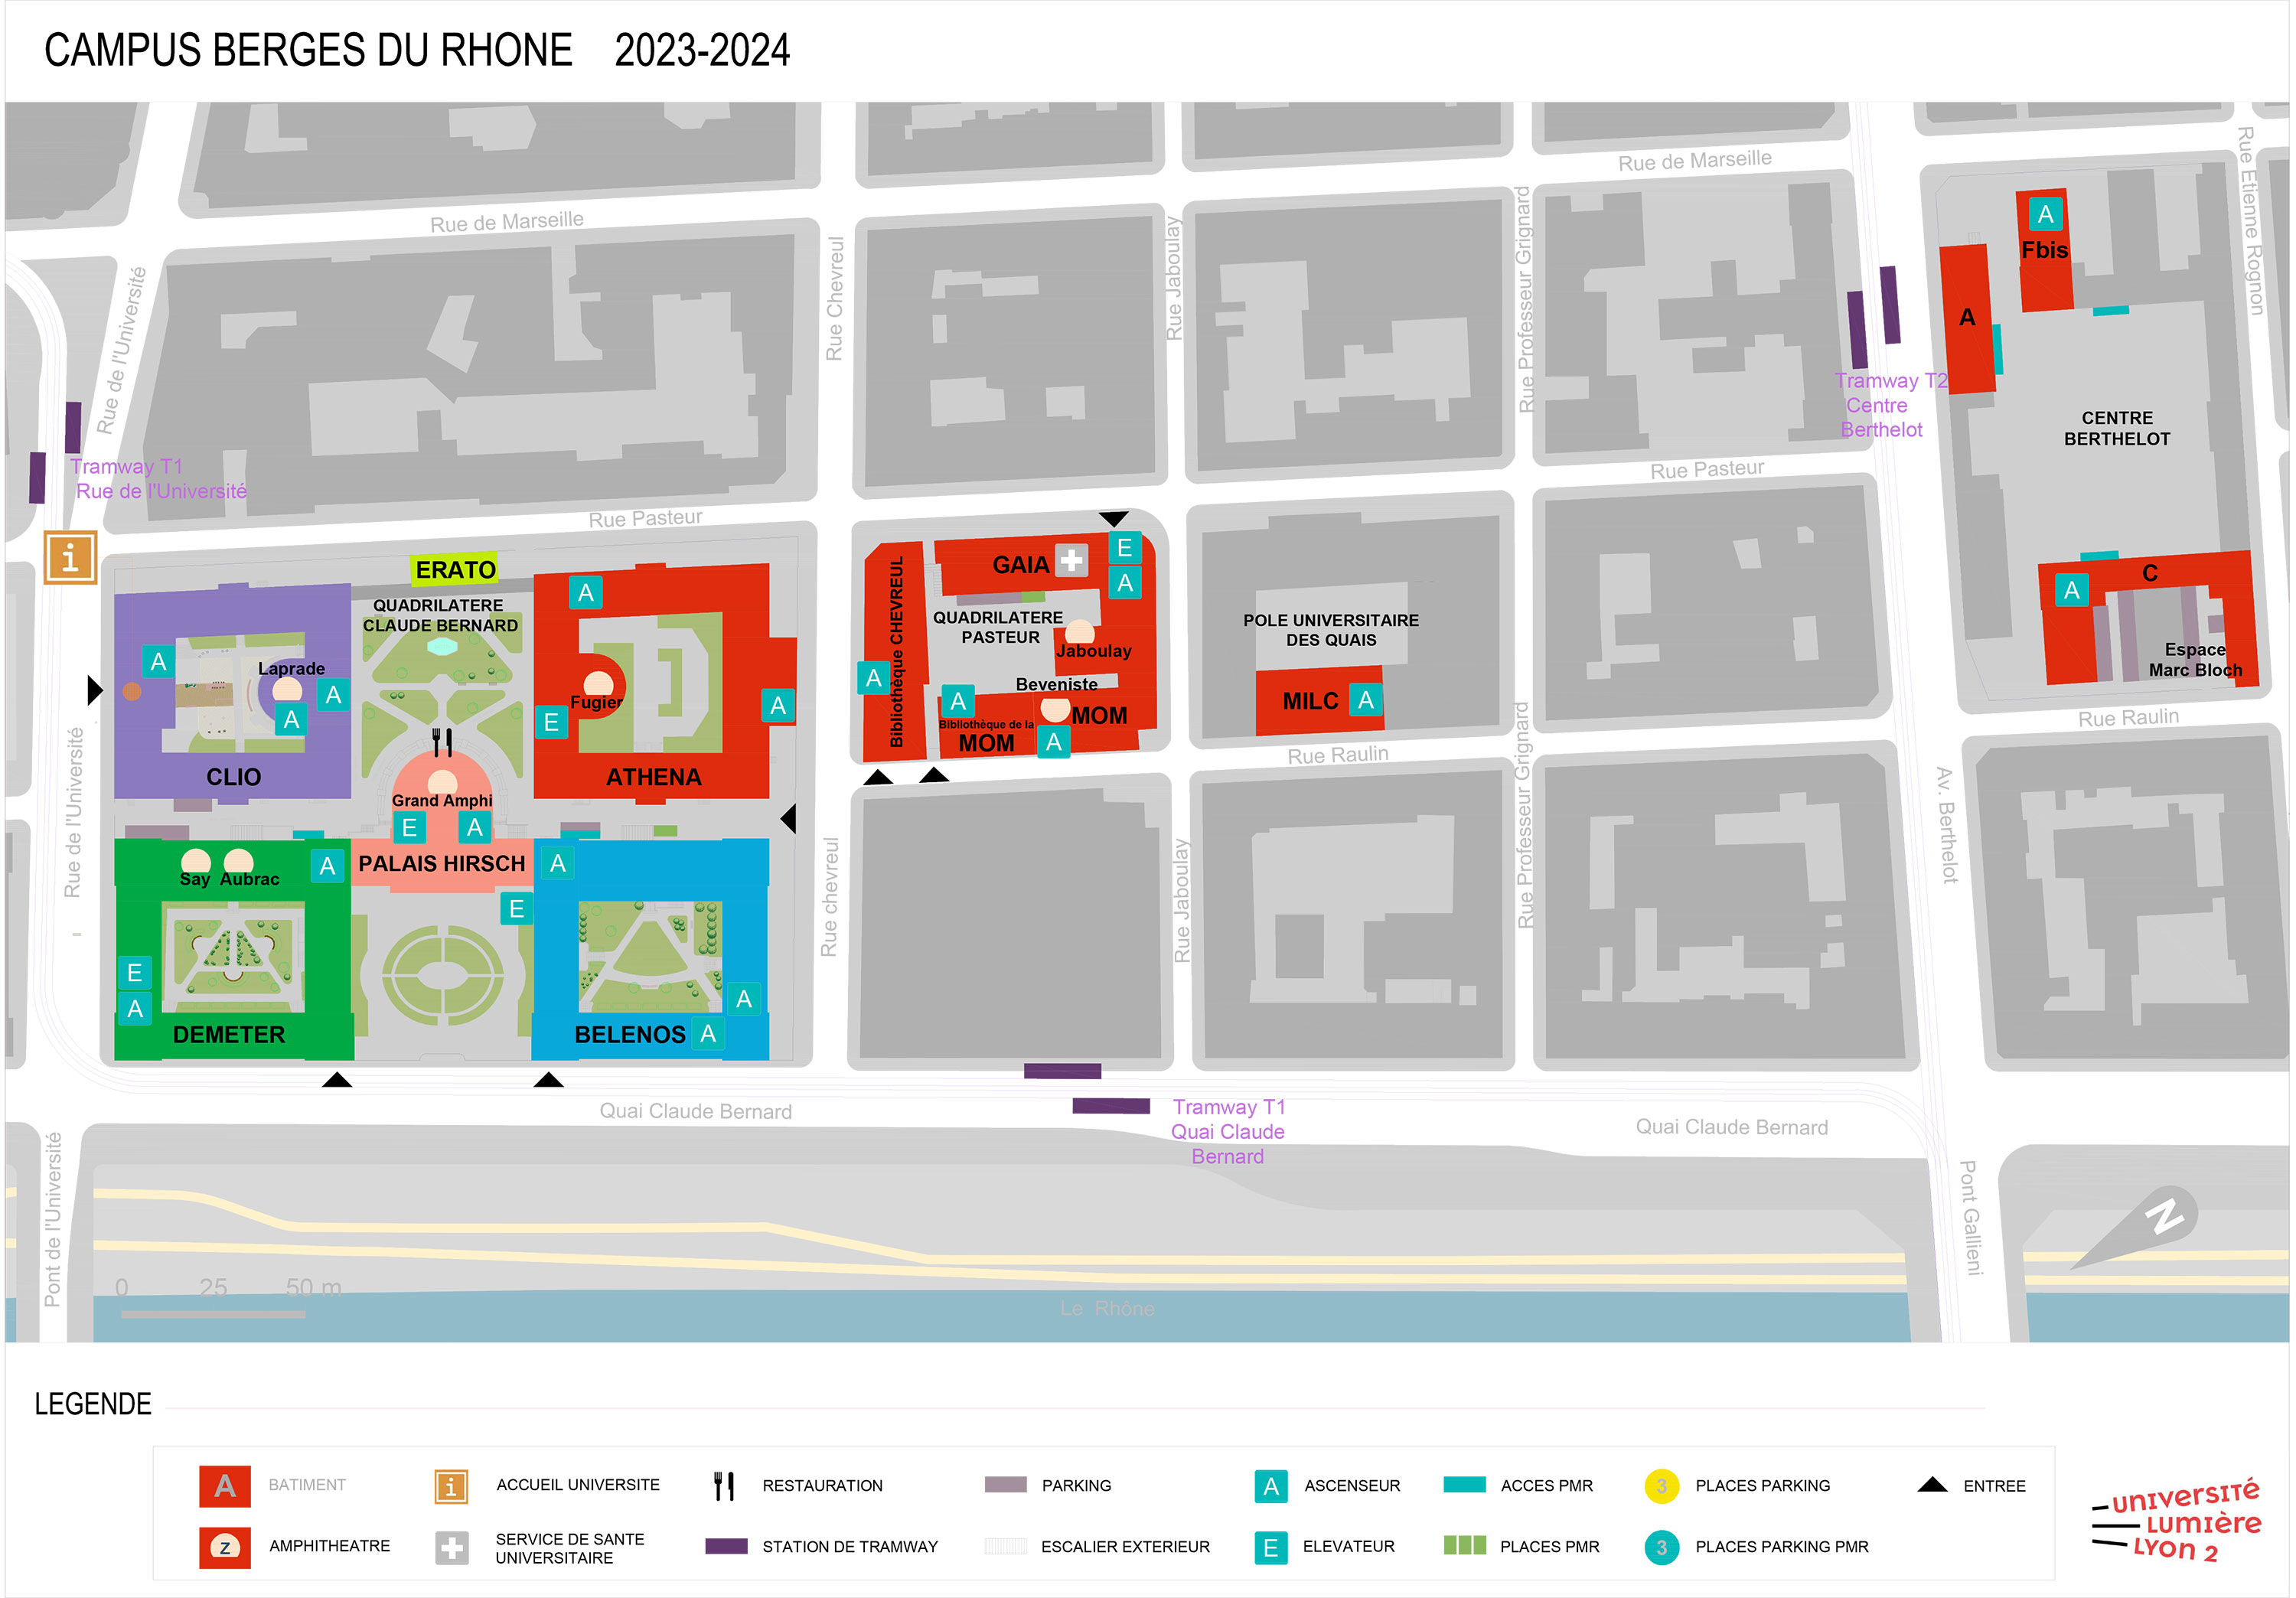 Plan Campus Berges du Rhône (BDR) 2023/2024